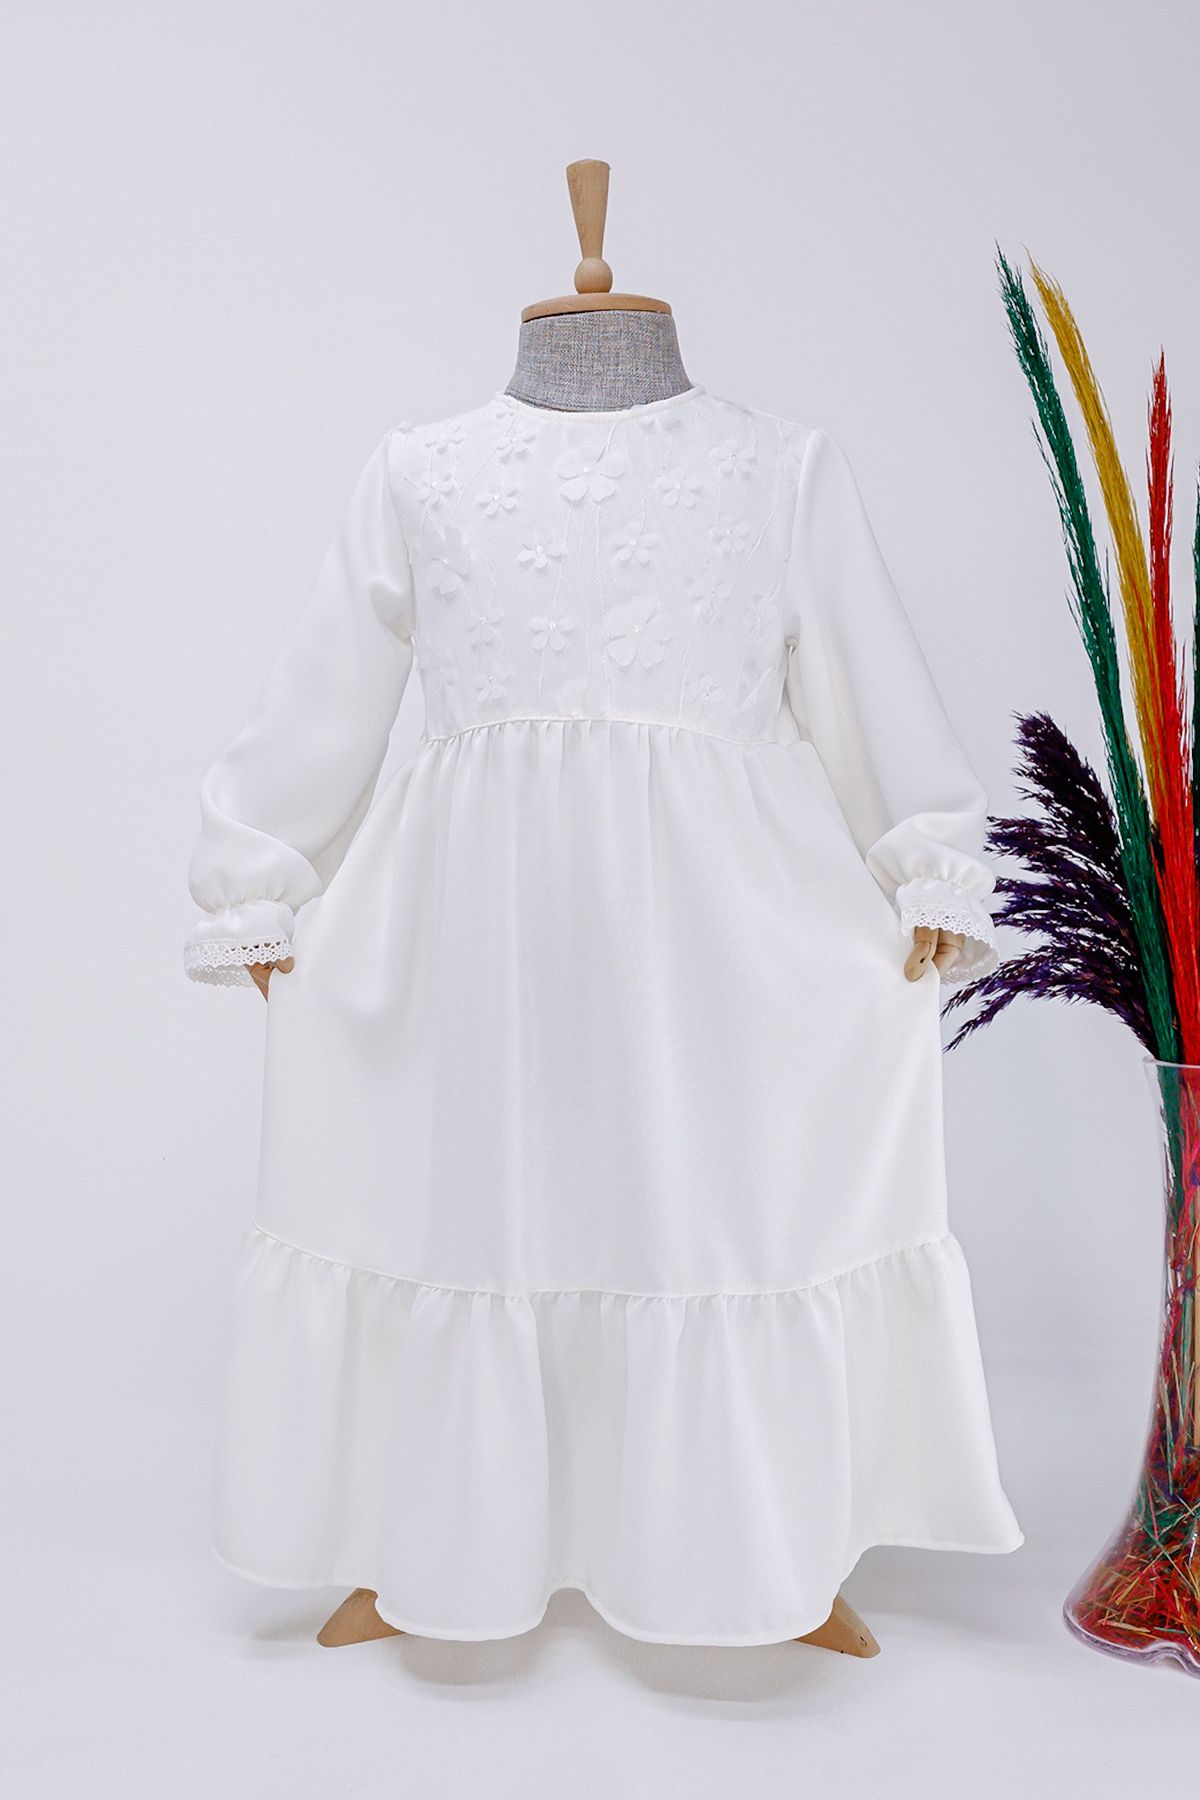 Betül Akbay Kız Çocuk İcazet Merasimi Özel Gün Elbisesi Meryem Model Beyaz